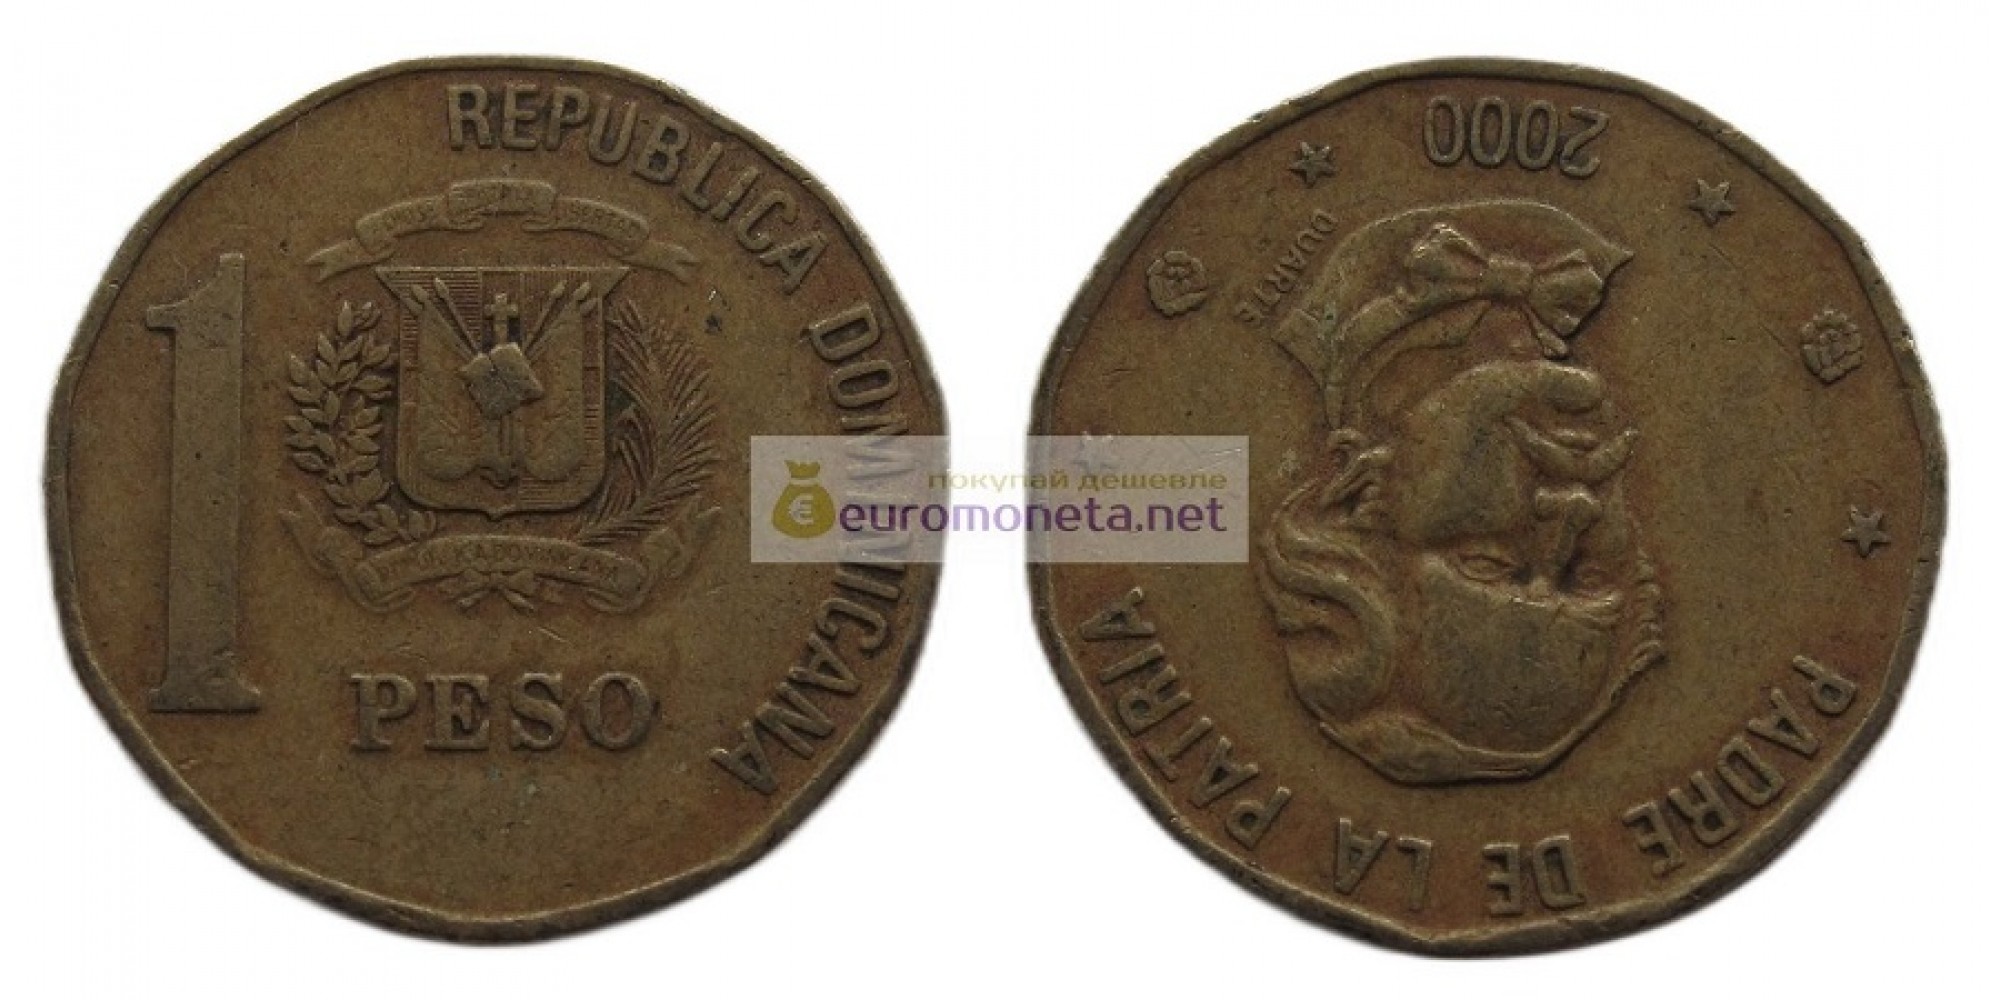 Доминиканская Республика (Доминикана) 1 песо 2000 год